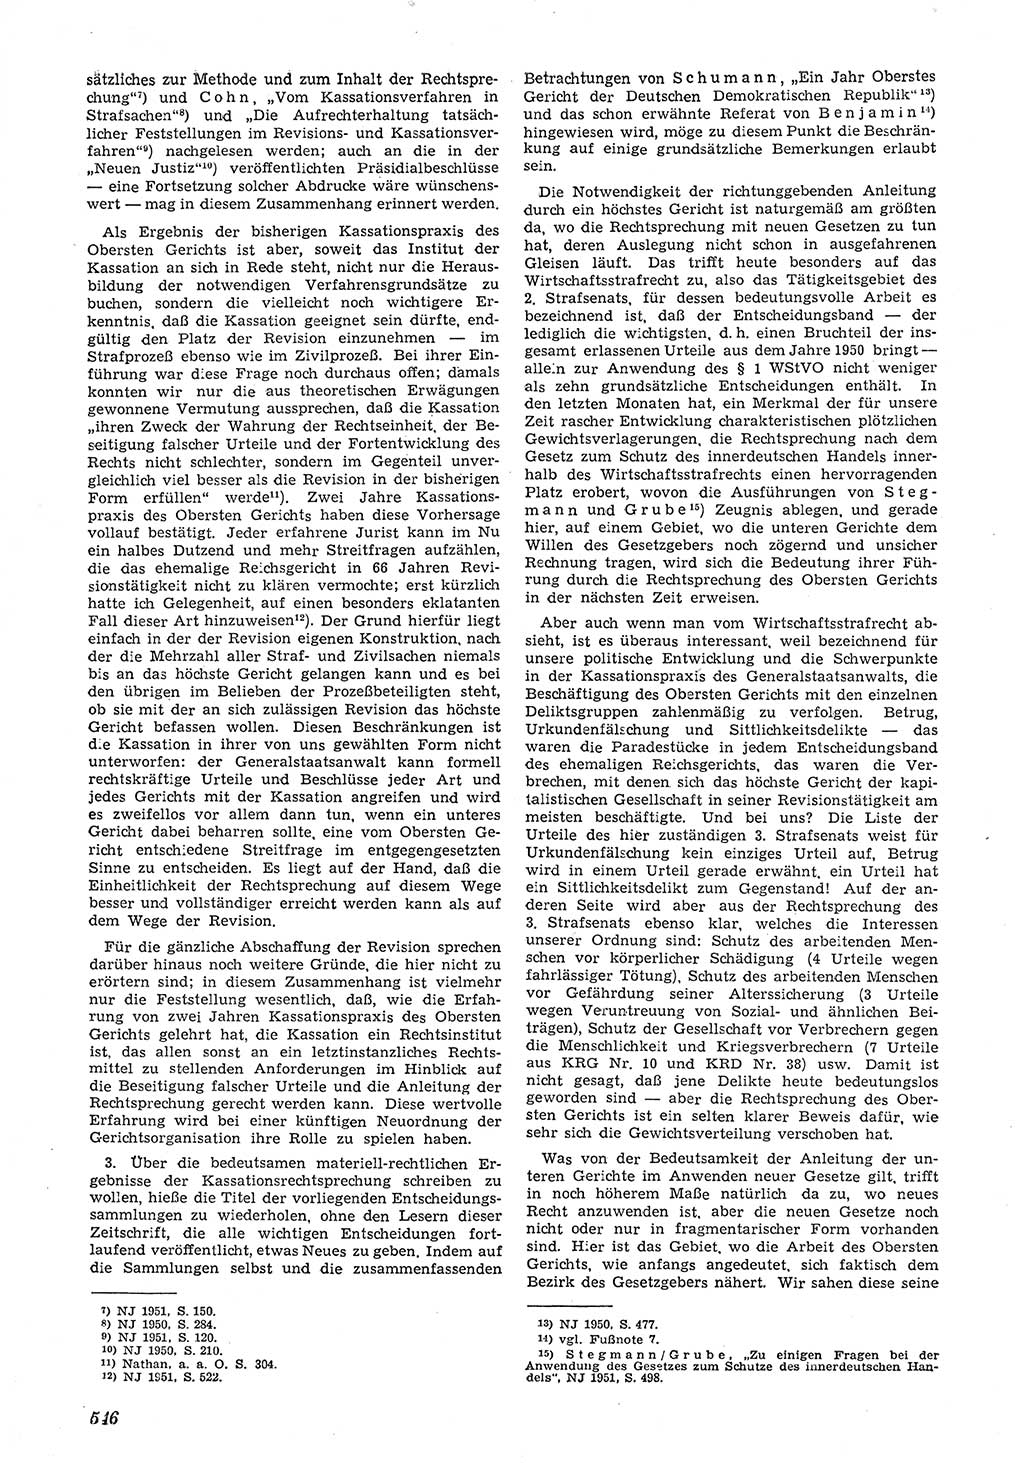 Neue Justiz (NJ), Zeitschrift für Recht und Rechtswissenschaft [Deutsche Demokratische Republik (DDR)], 5. Jahrgang 1951, Seite 546 (NJ DDR 1951, S. 546)